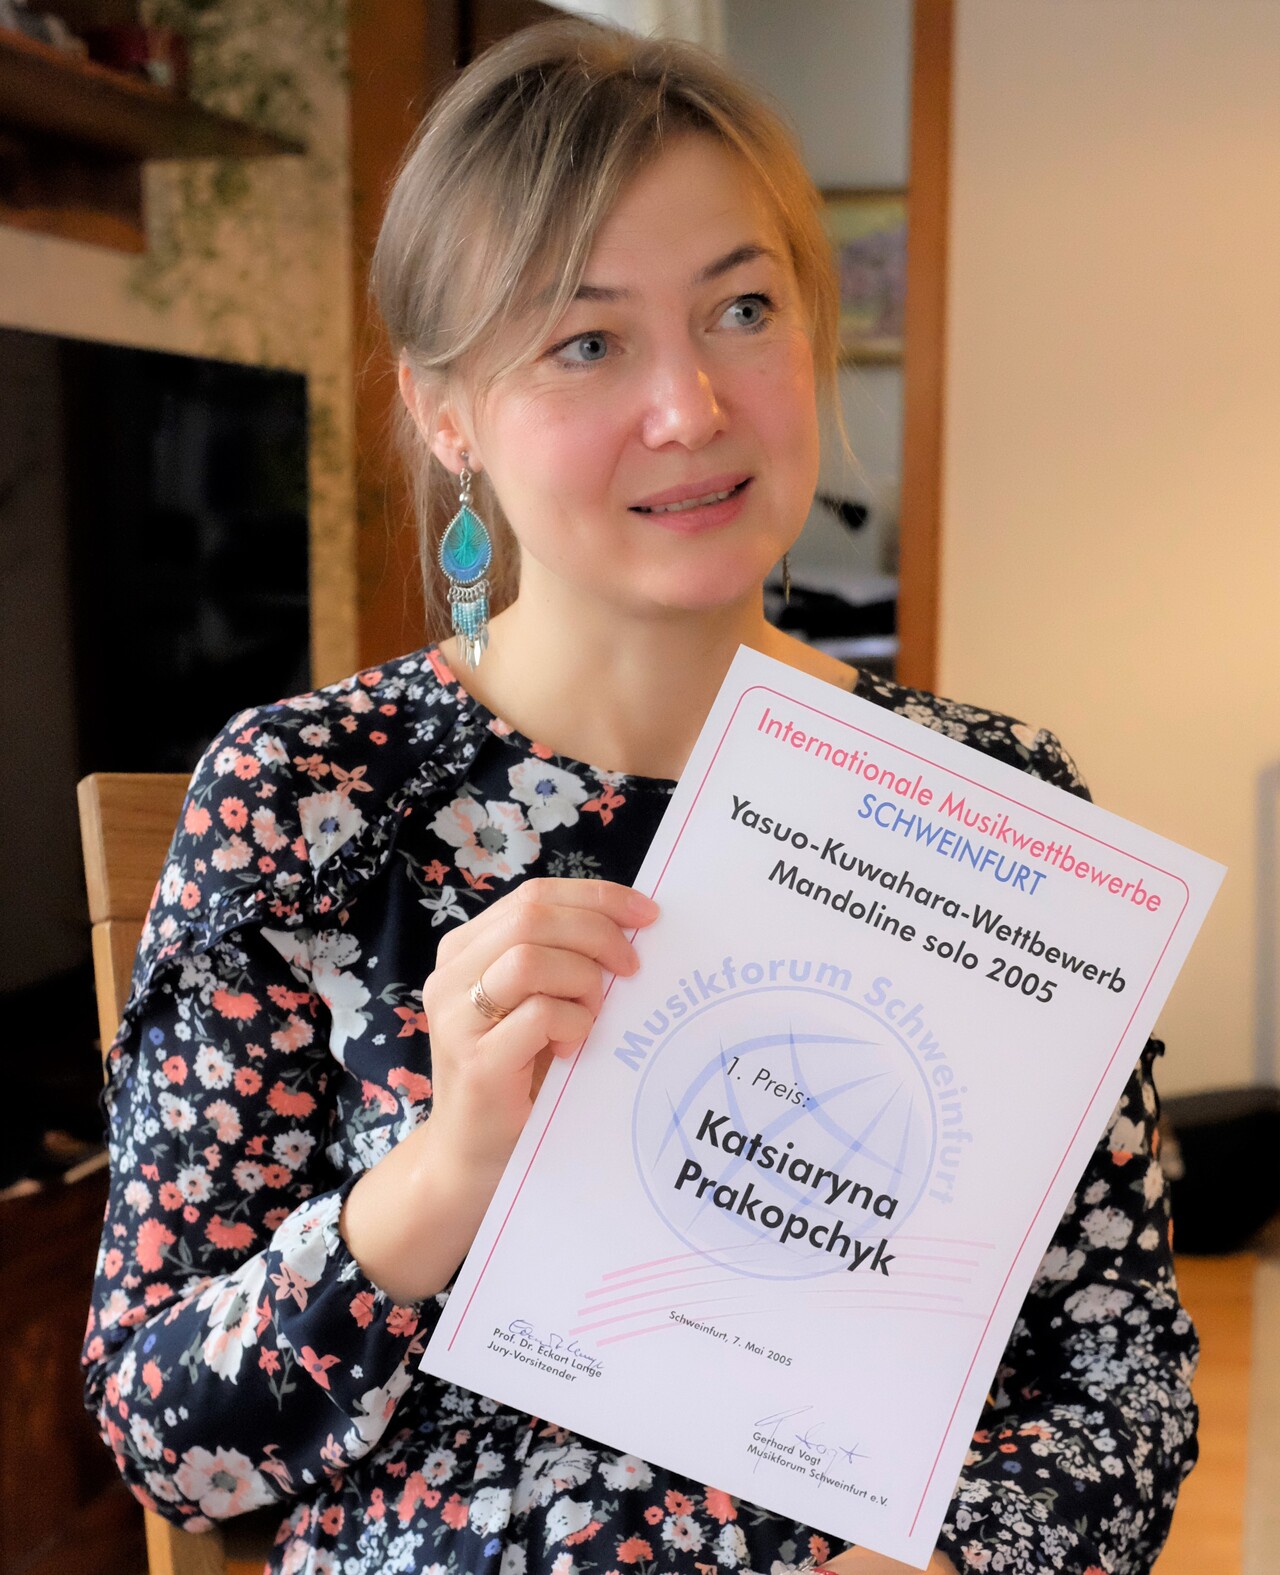 Katsia Prakopchyk mit der Urkunde des Yasuo Kuwahara Wettbewerb